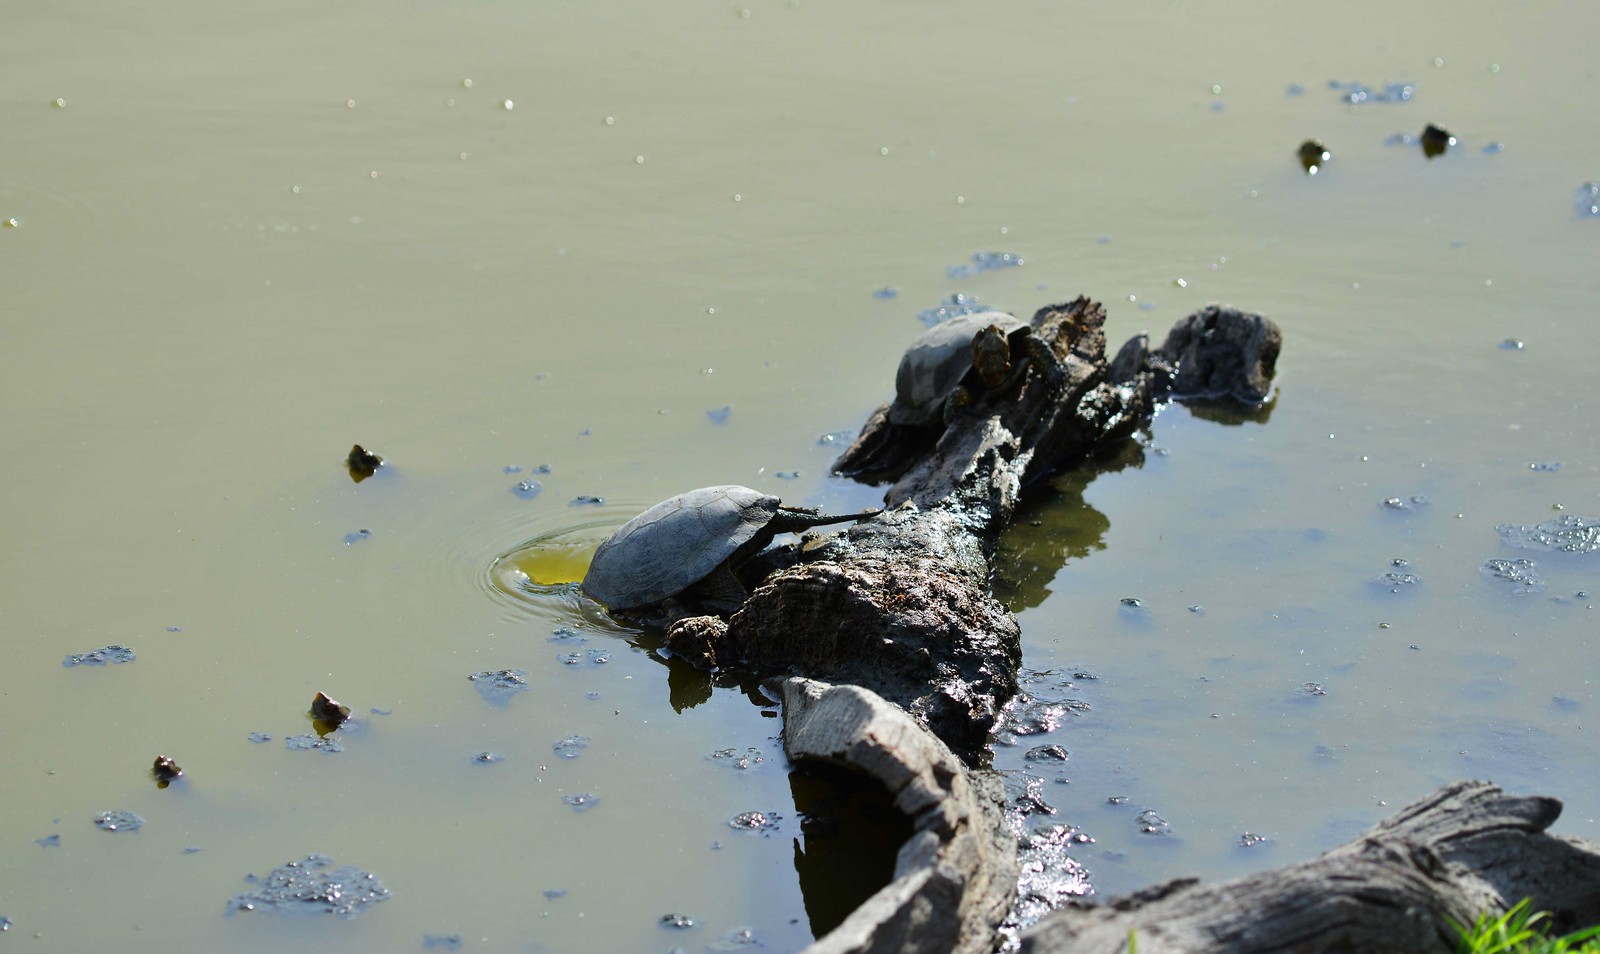 DSC_1116-Western Pond Turtle | by orientalizing